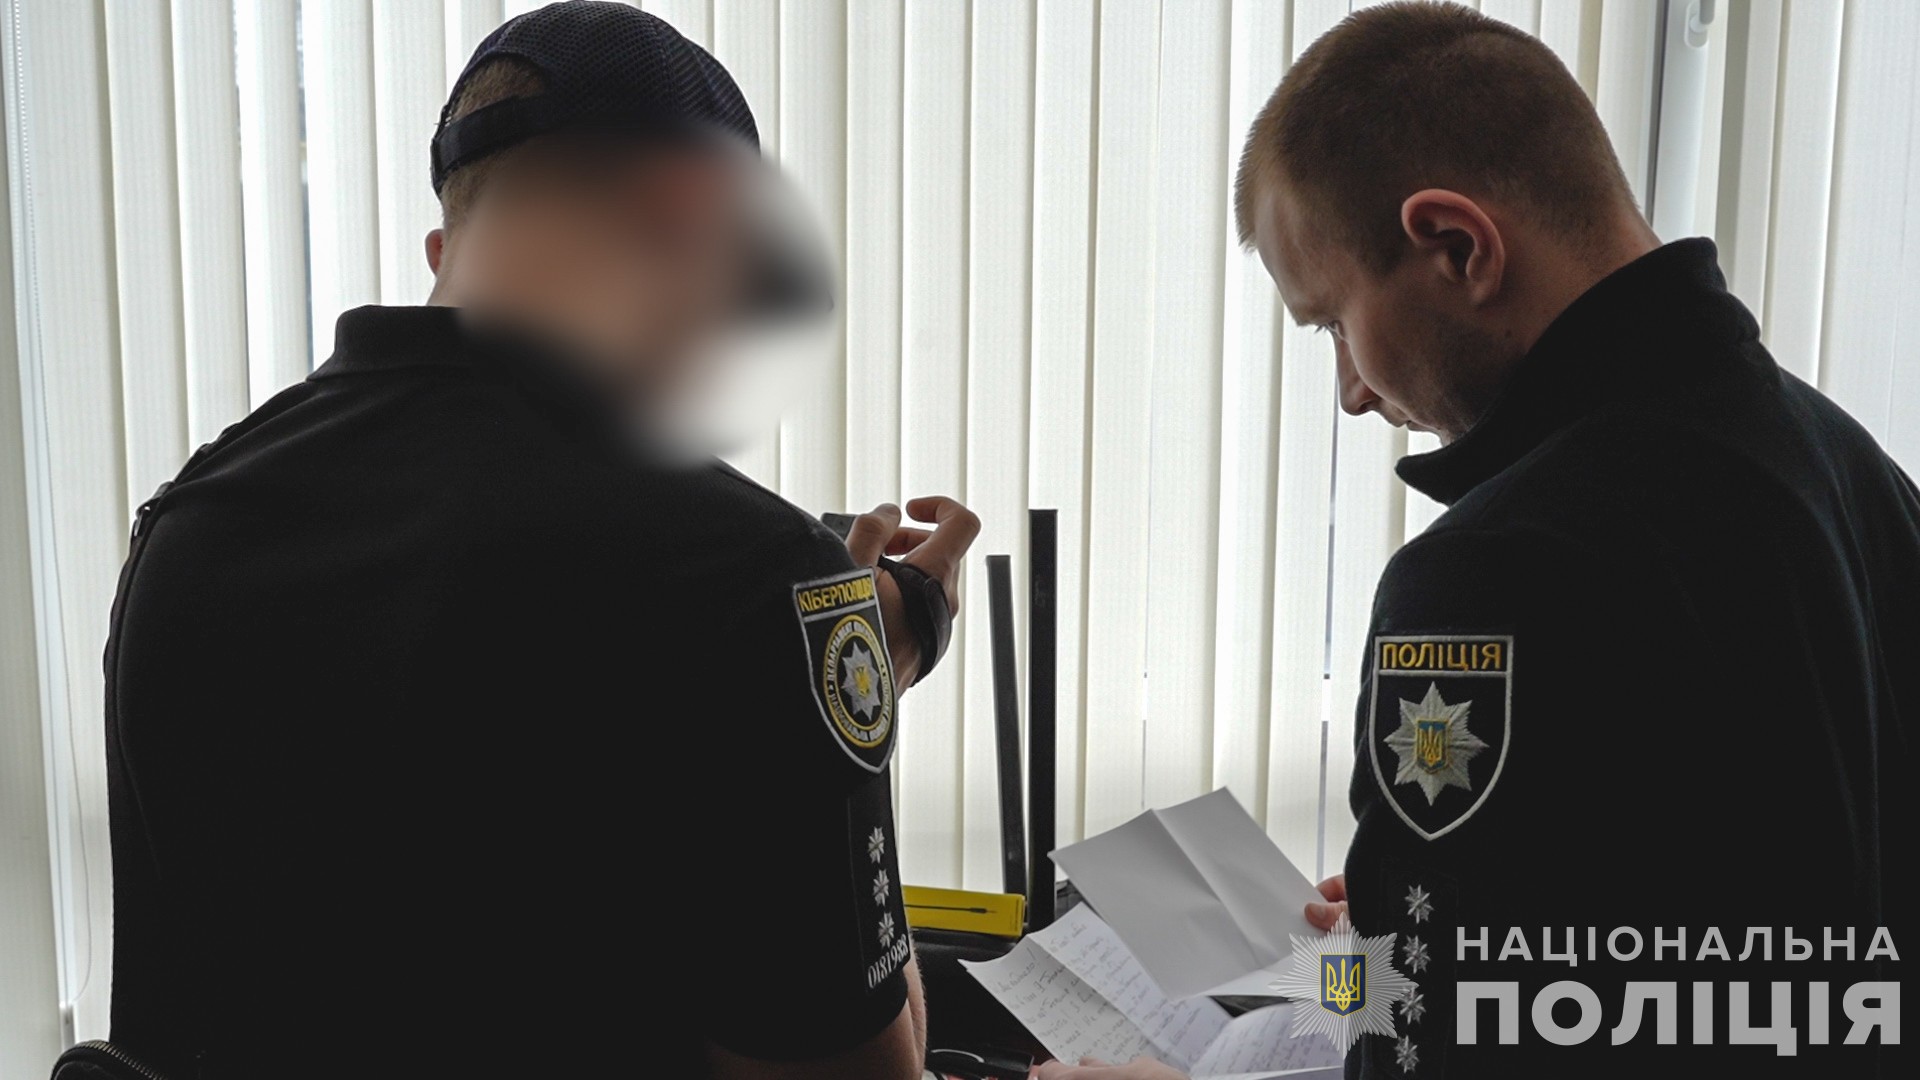 Мошеннический call-центр в Одессе на 5,5 миллионов гривен обманул граждан Чехии